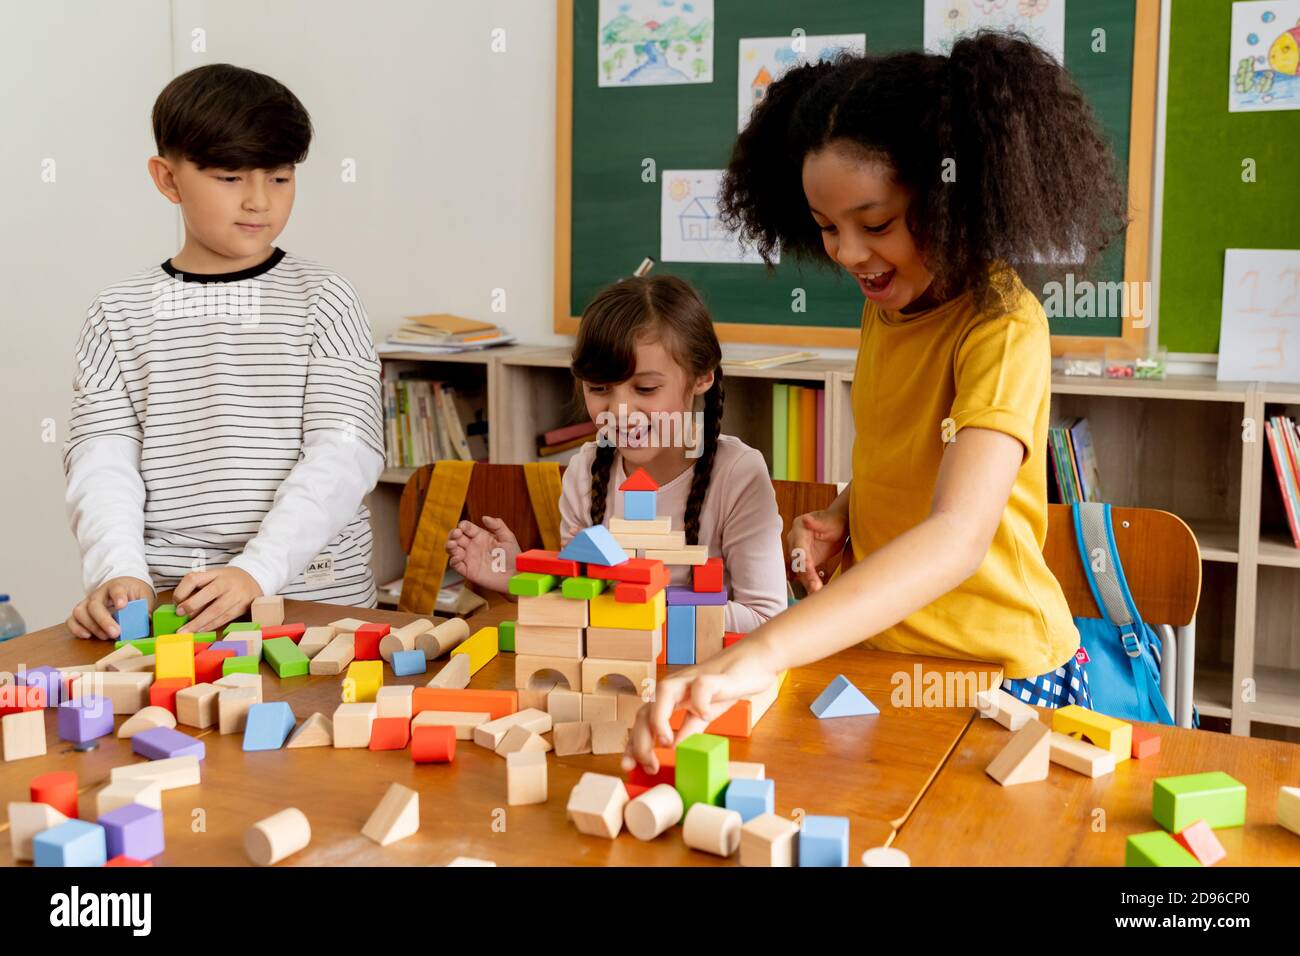 Gruppe von multiethnischen Schulfreunden mit Spielzeugblöcken im Klassenzimmer, Bildung, Lernen, Teamarbeit. Kinder spielen mit Holzblöcken im Klassenzimmer Stockfoto